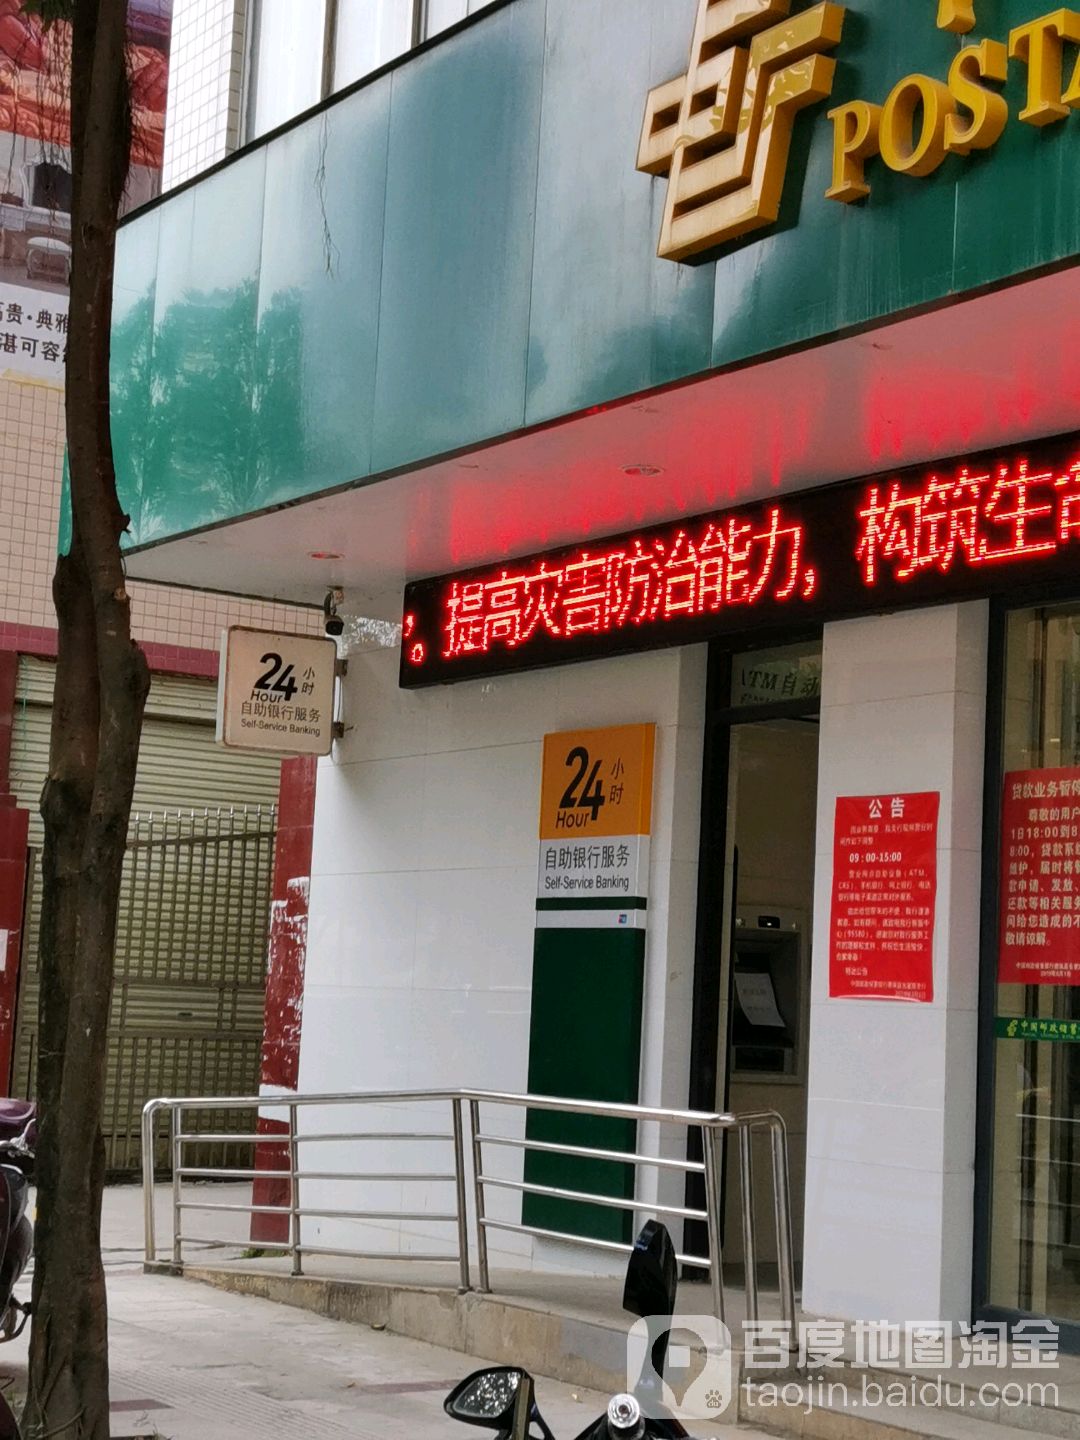 中国邮政储蓄银行24小时自助银行(吉星路支行)